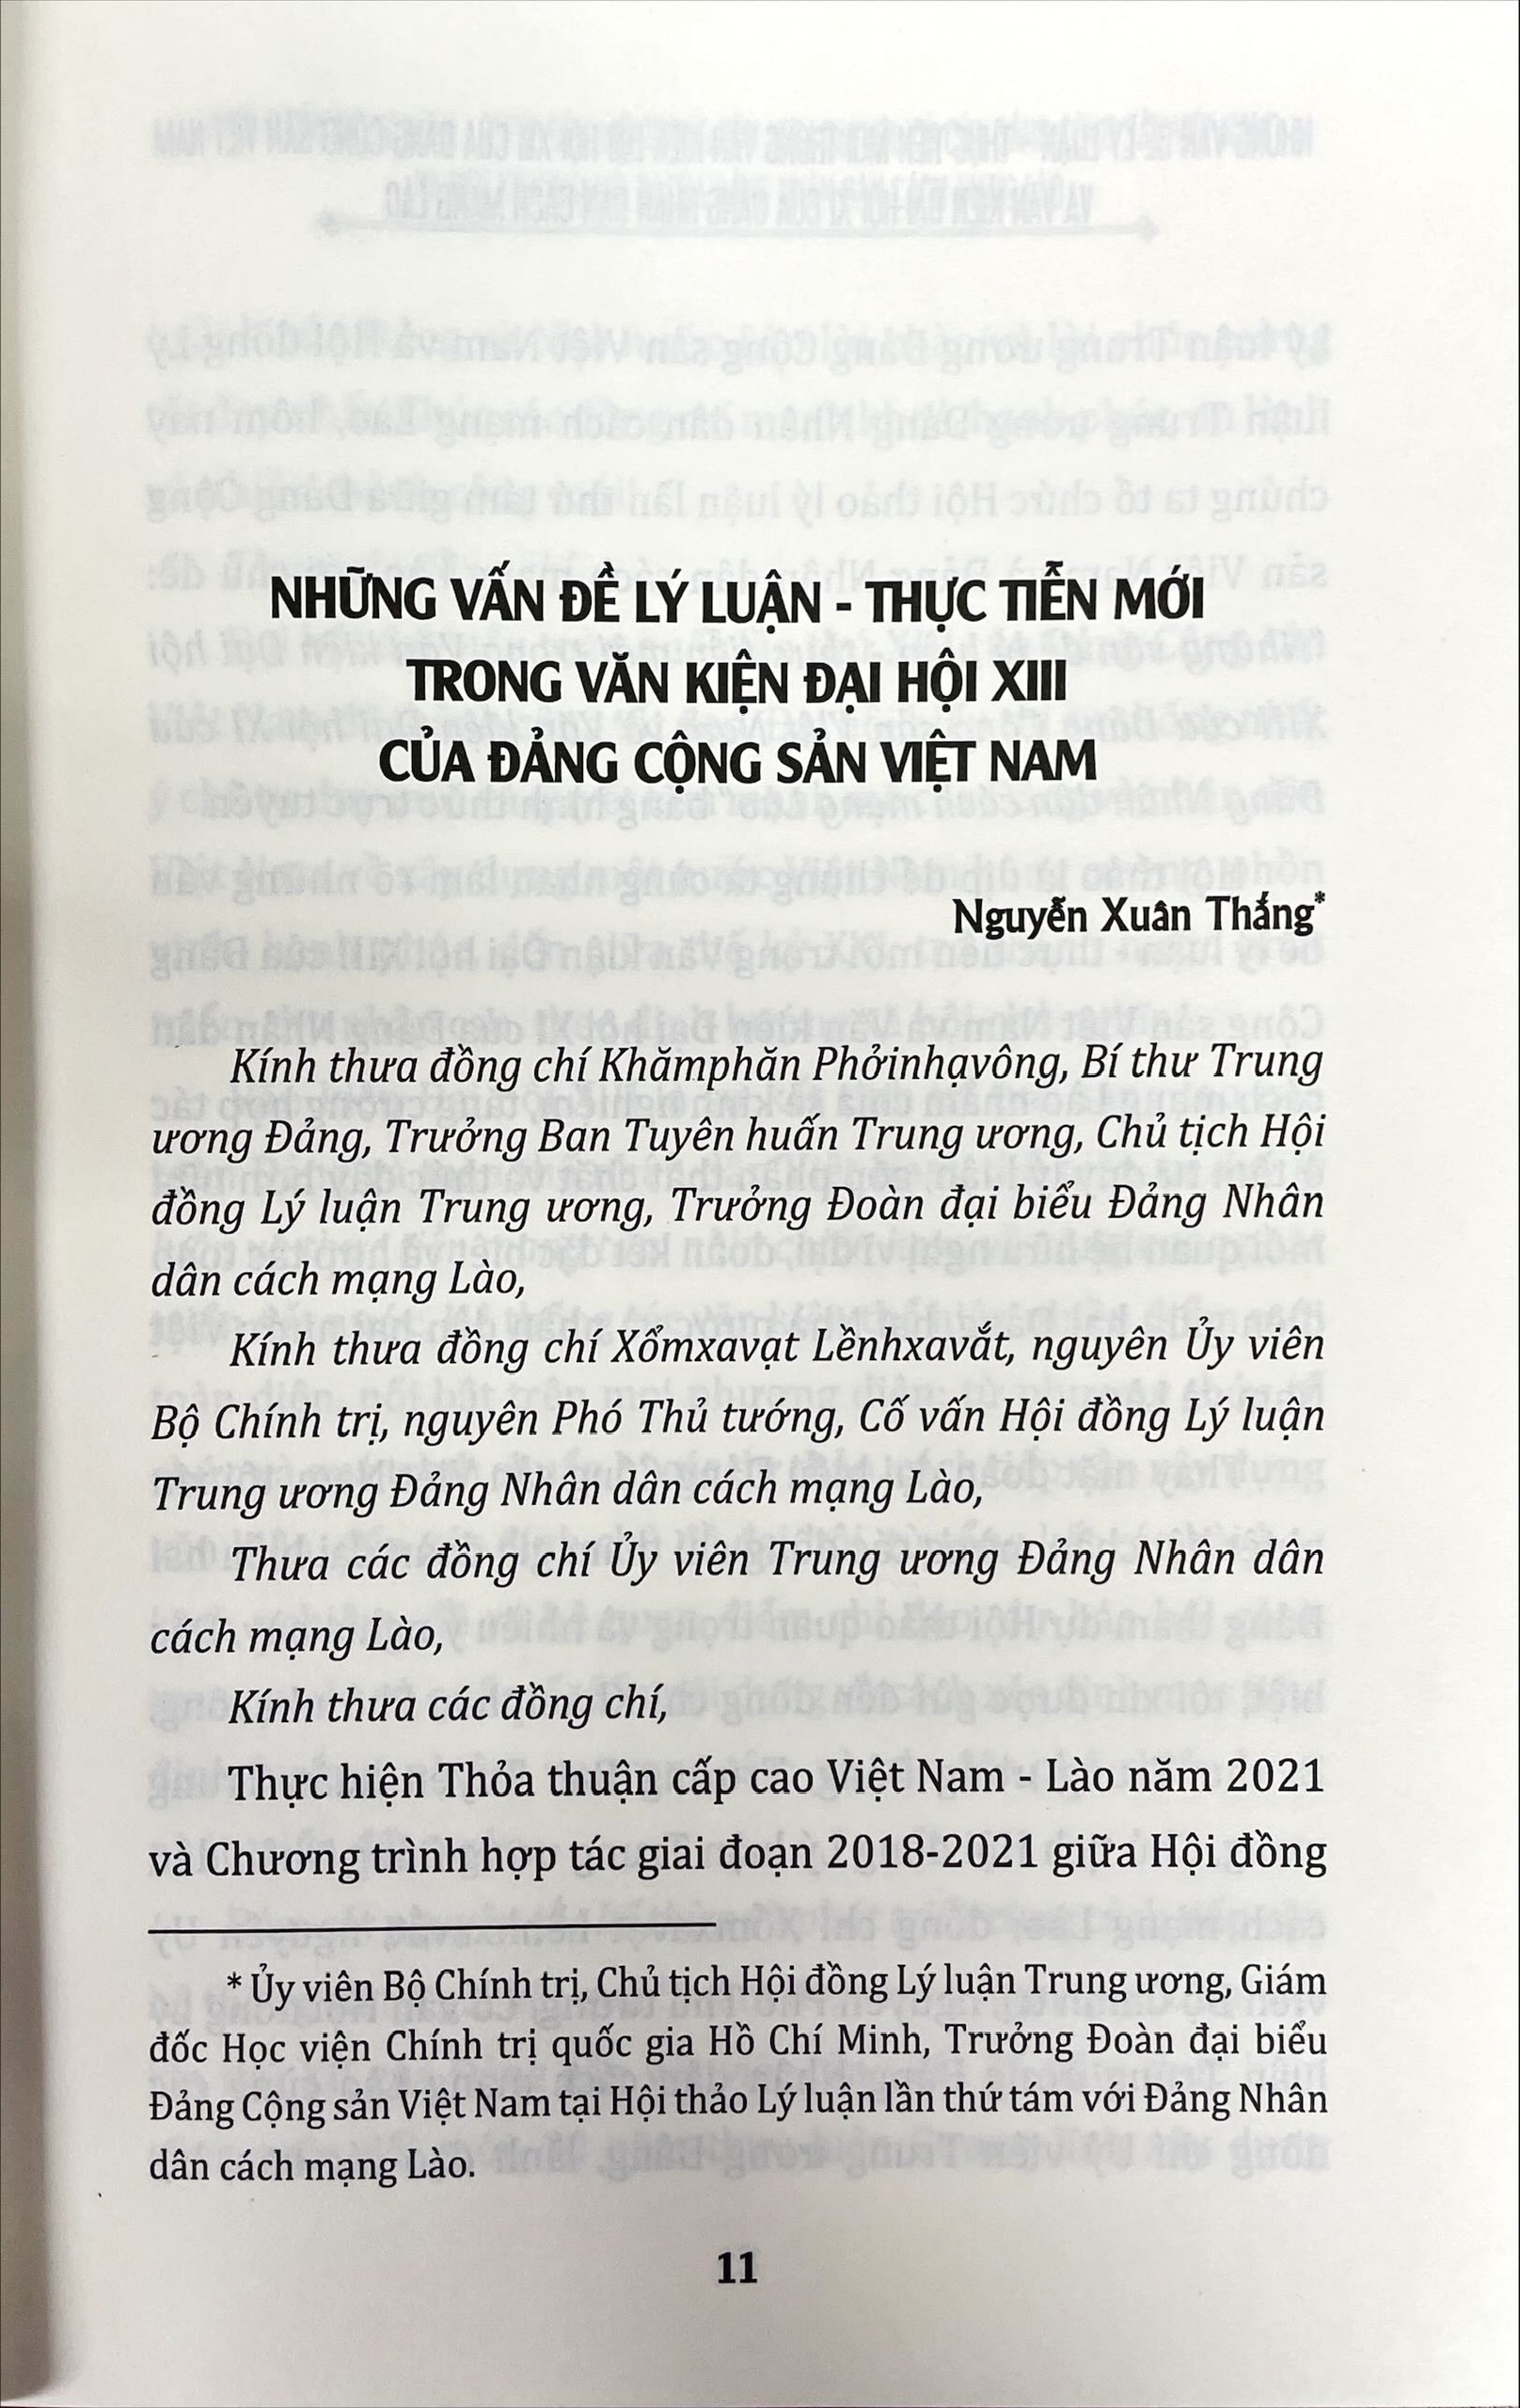 Những vấn đề lý luận - thực tiễn mới trong Văn kiện Đại hội XIII của Đảng Cộng sản Việt Nam và văn kiện Đại hội XI của Đảng Nhân dân cách mạng Lào